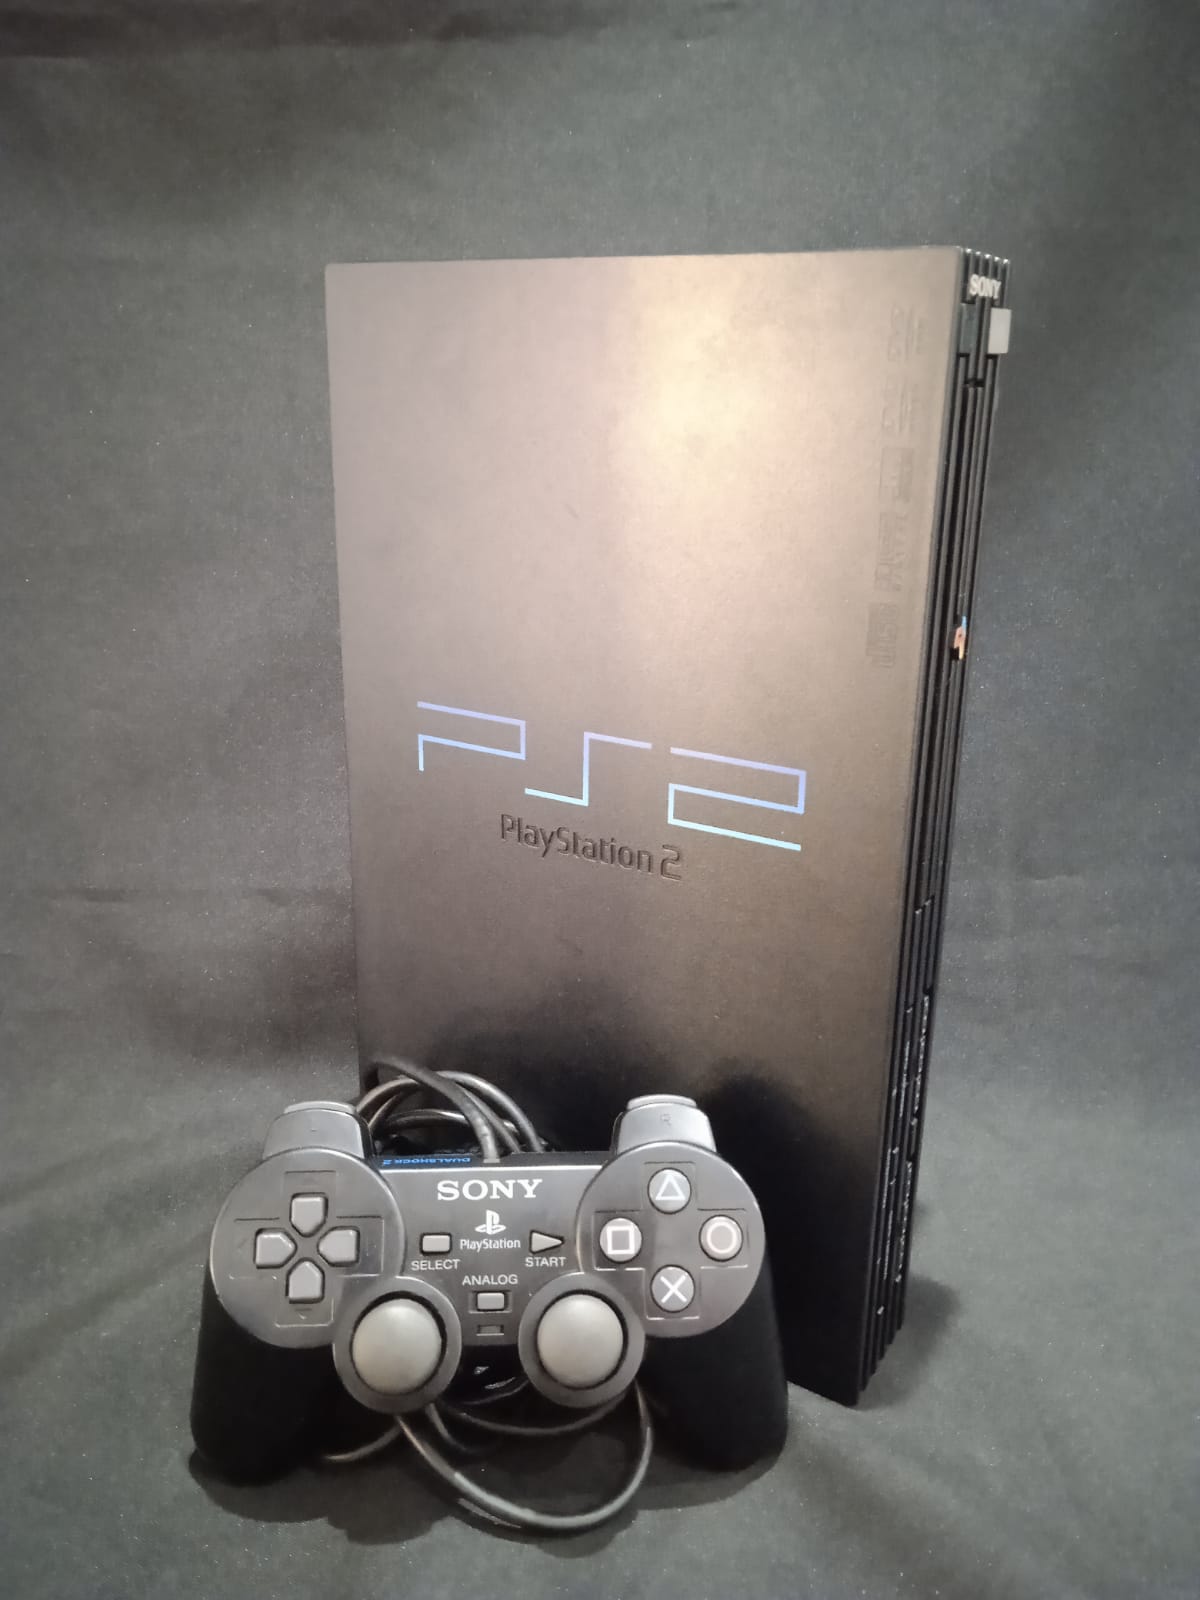 Sony PlayStation 2 FAT, playstation 2 